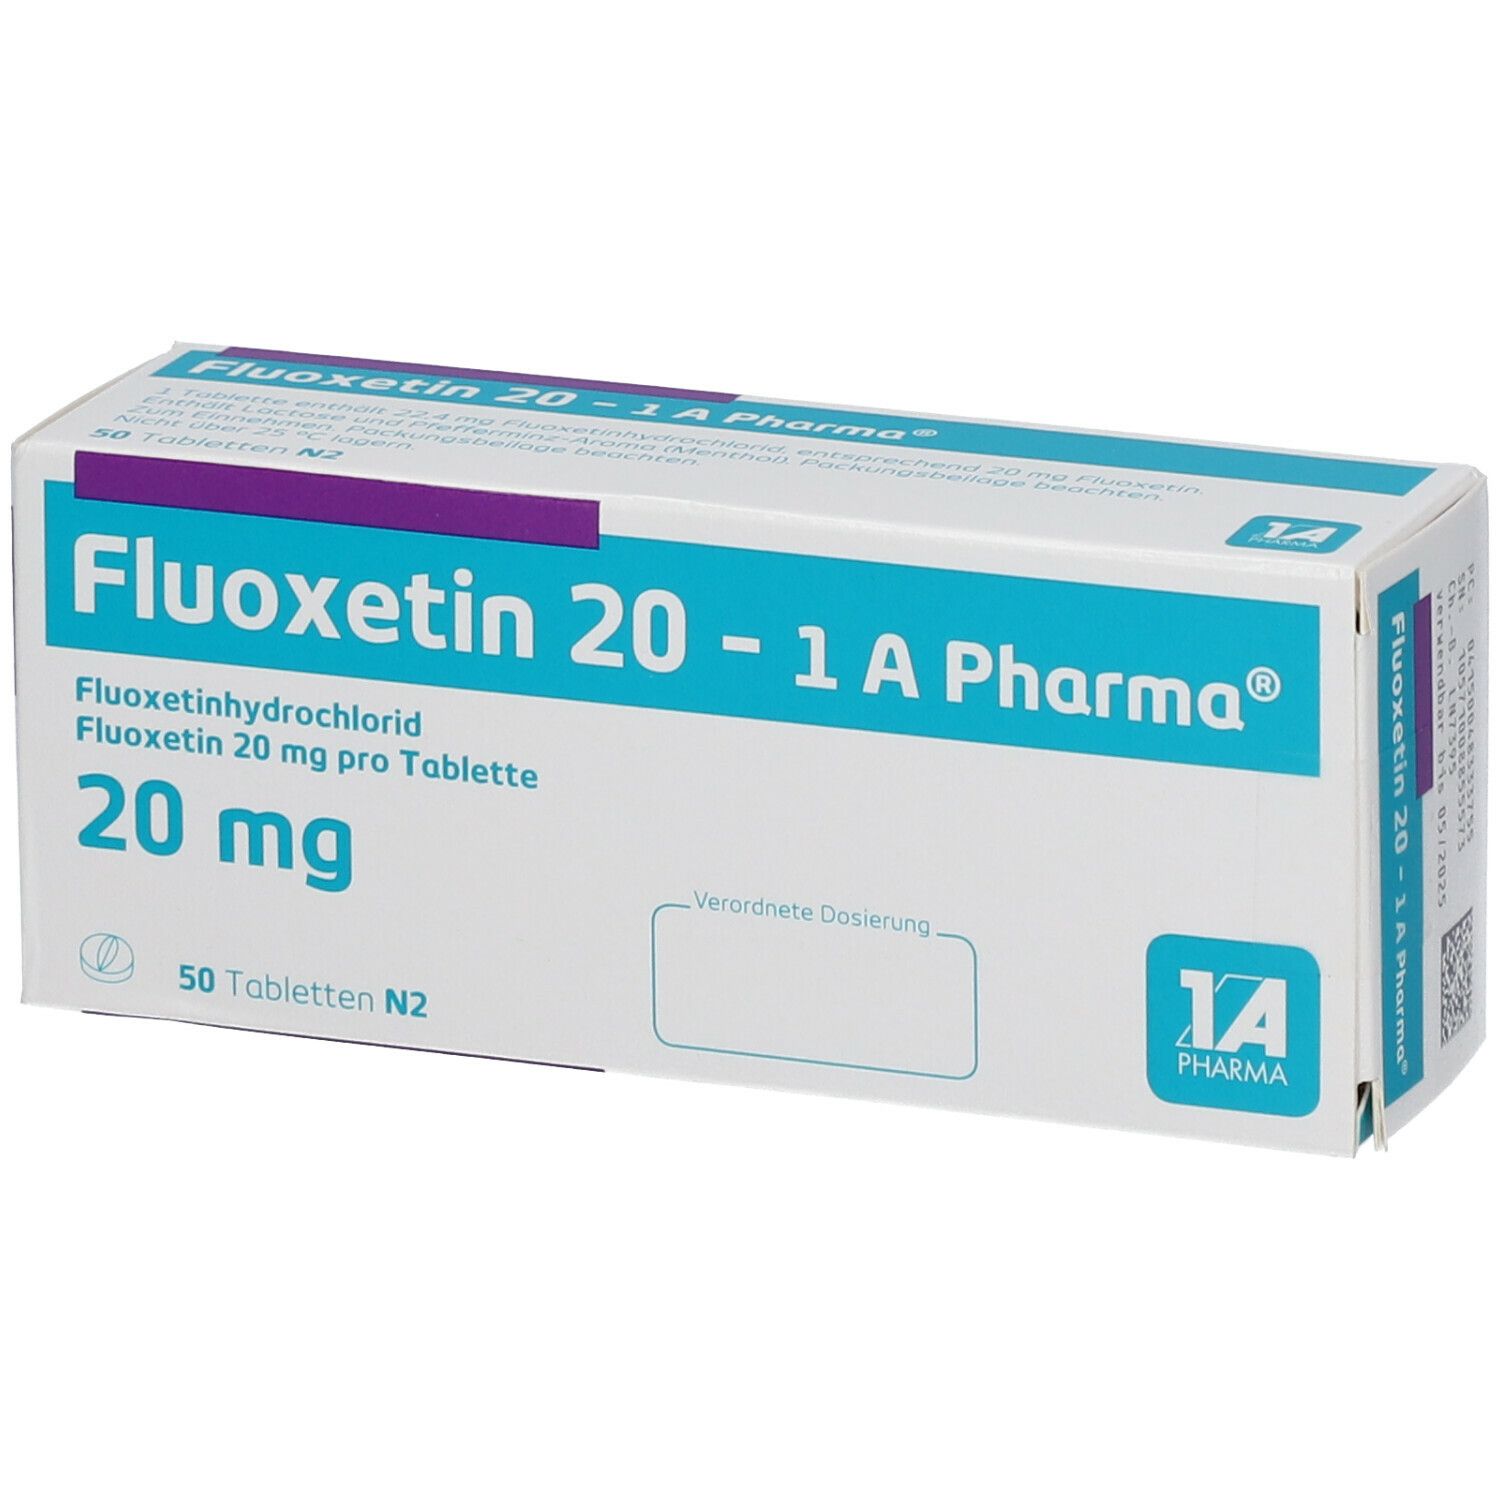 Fluoxetin 20 1A Pharma®